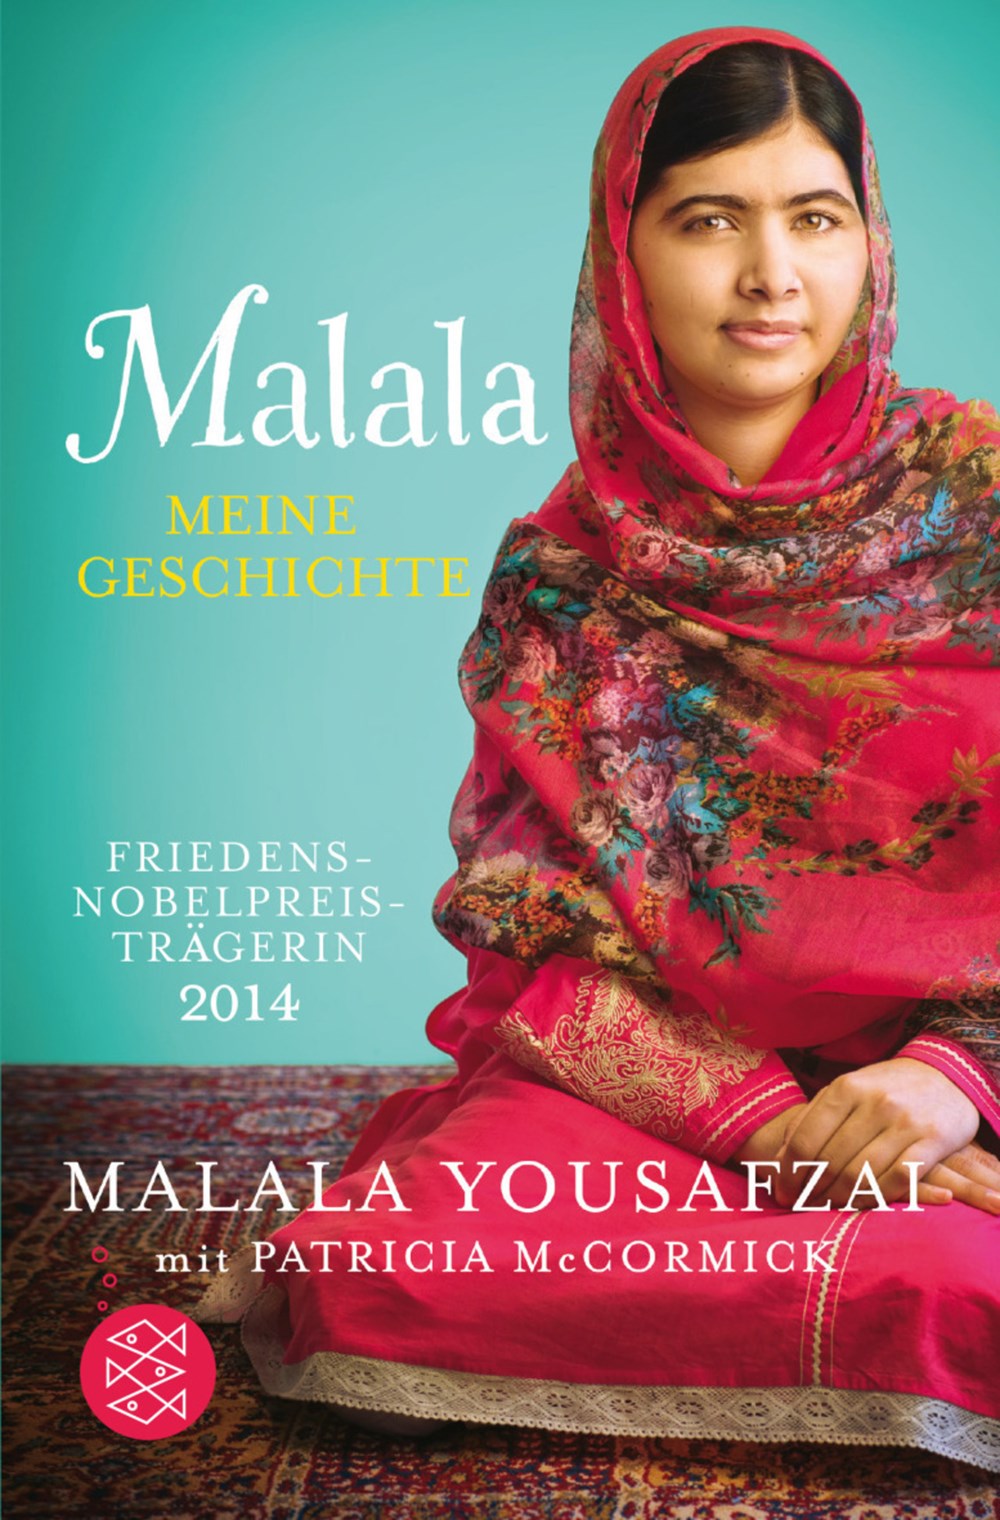 Tôi là Malala - Hành trình bảo vệ ước mơ  đến trường của một cô gái trẻ - ảnh 1